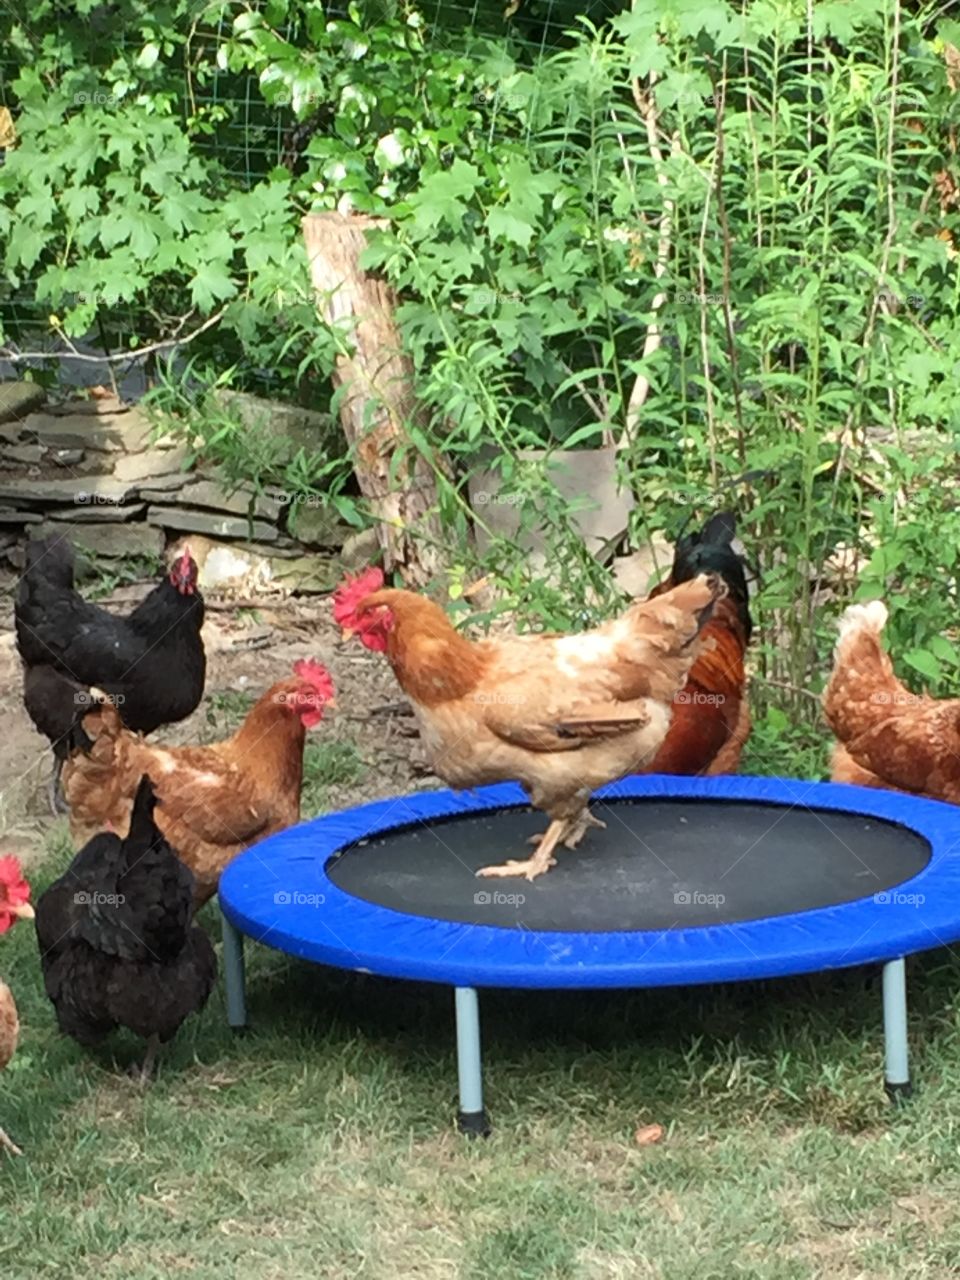 Just a chicken on a trampoline 